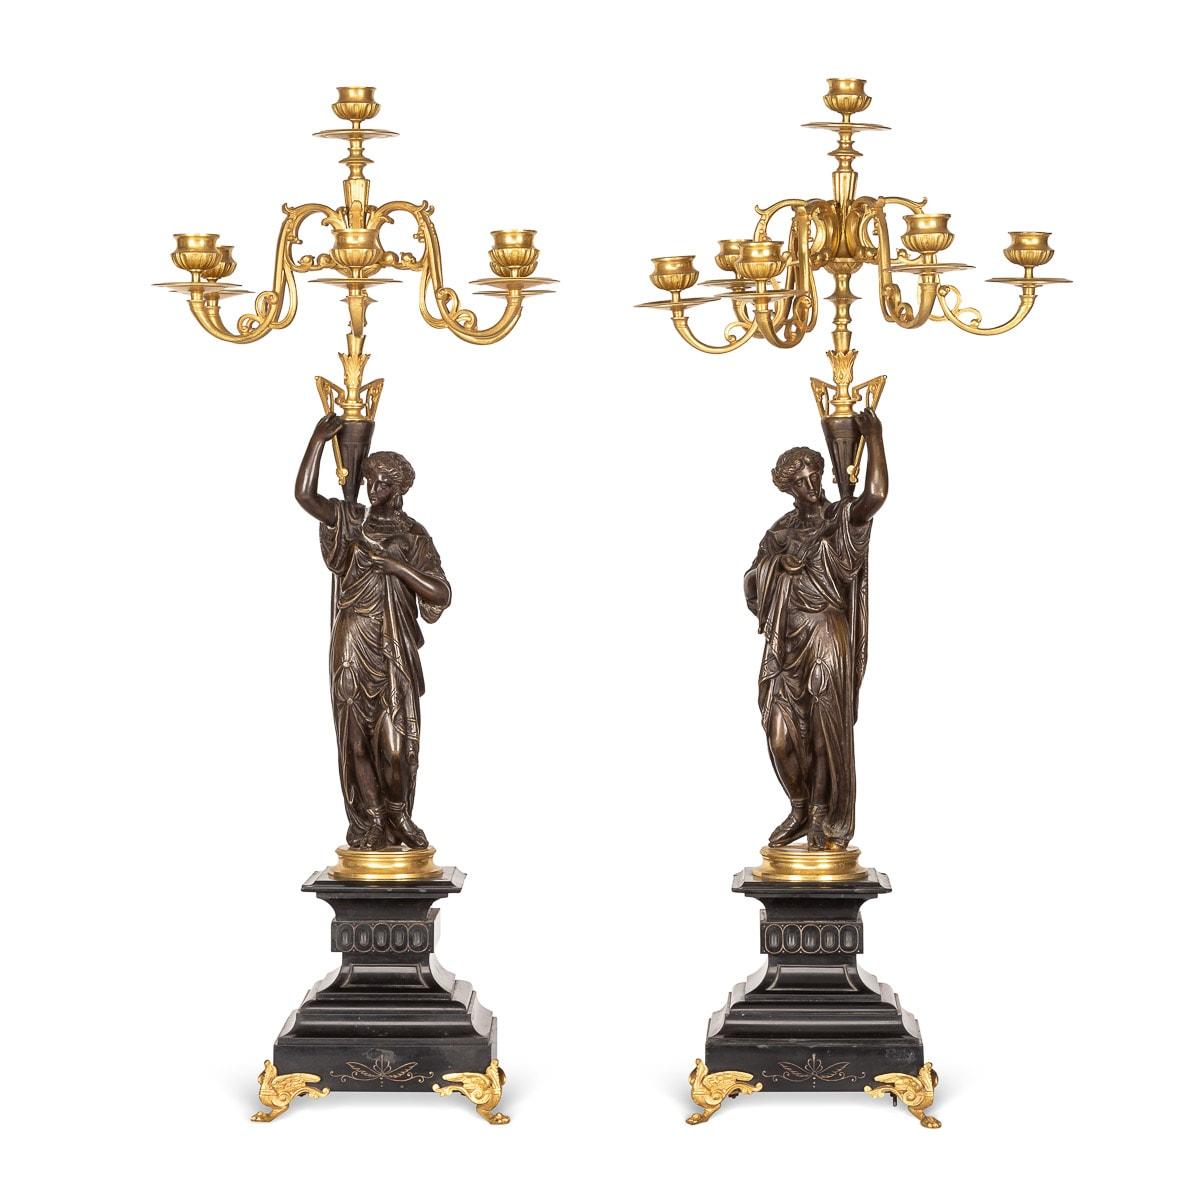 Antikes französisches Paar Bronzeleuchter aus dem 19. Jahrhundert in Form einer stehenden weiblichen Figur, die einen 7-flammigen Kandelaber aus vergoldeter Bronze hält. Die aus Bronze gegossenen Figuren standen auf schwarzen Marmorsockeln auf